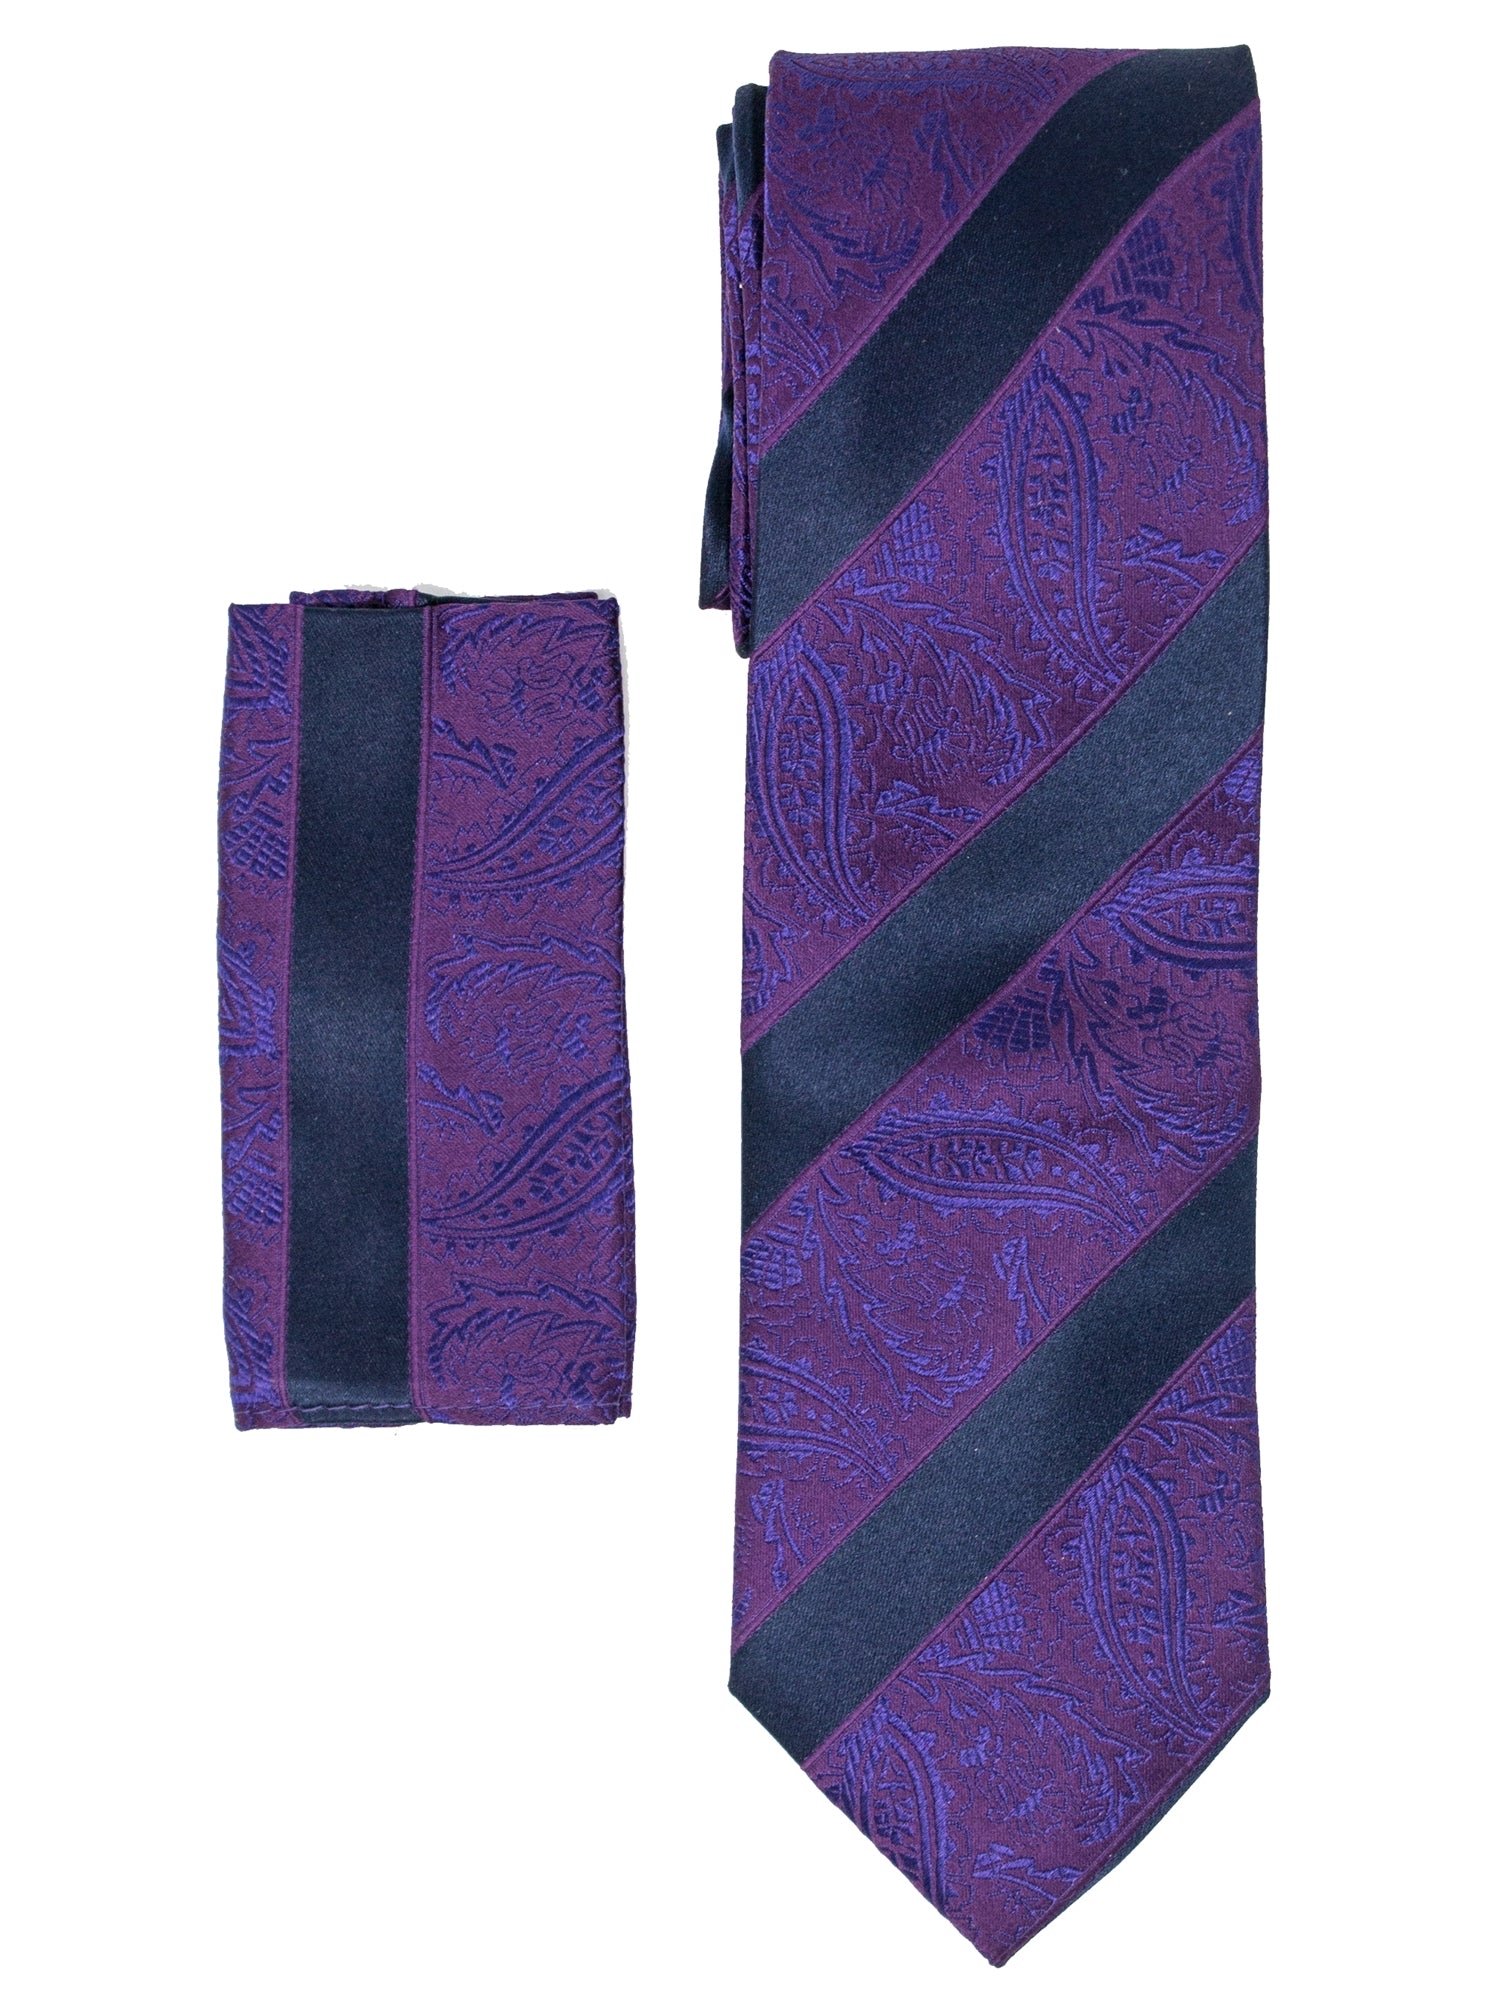 Men's Silk Woven Wedding Neck Tie With Handkerchief Neck Tie TheDapperTie Dark Purple And Navy Paisley Regular 